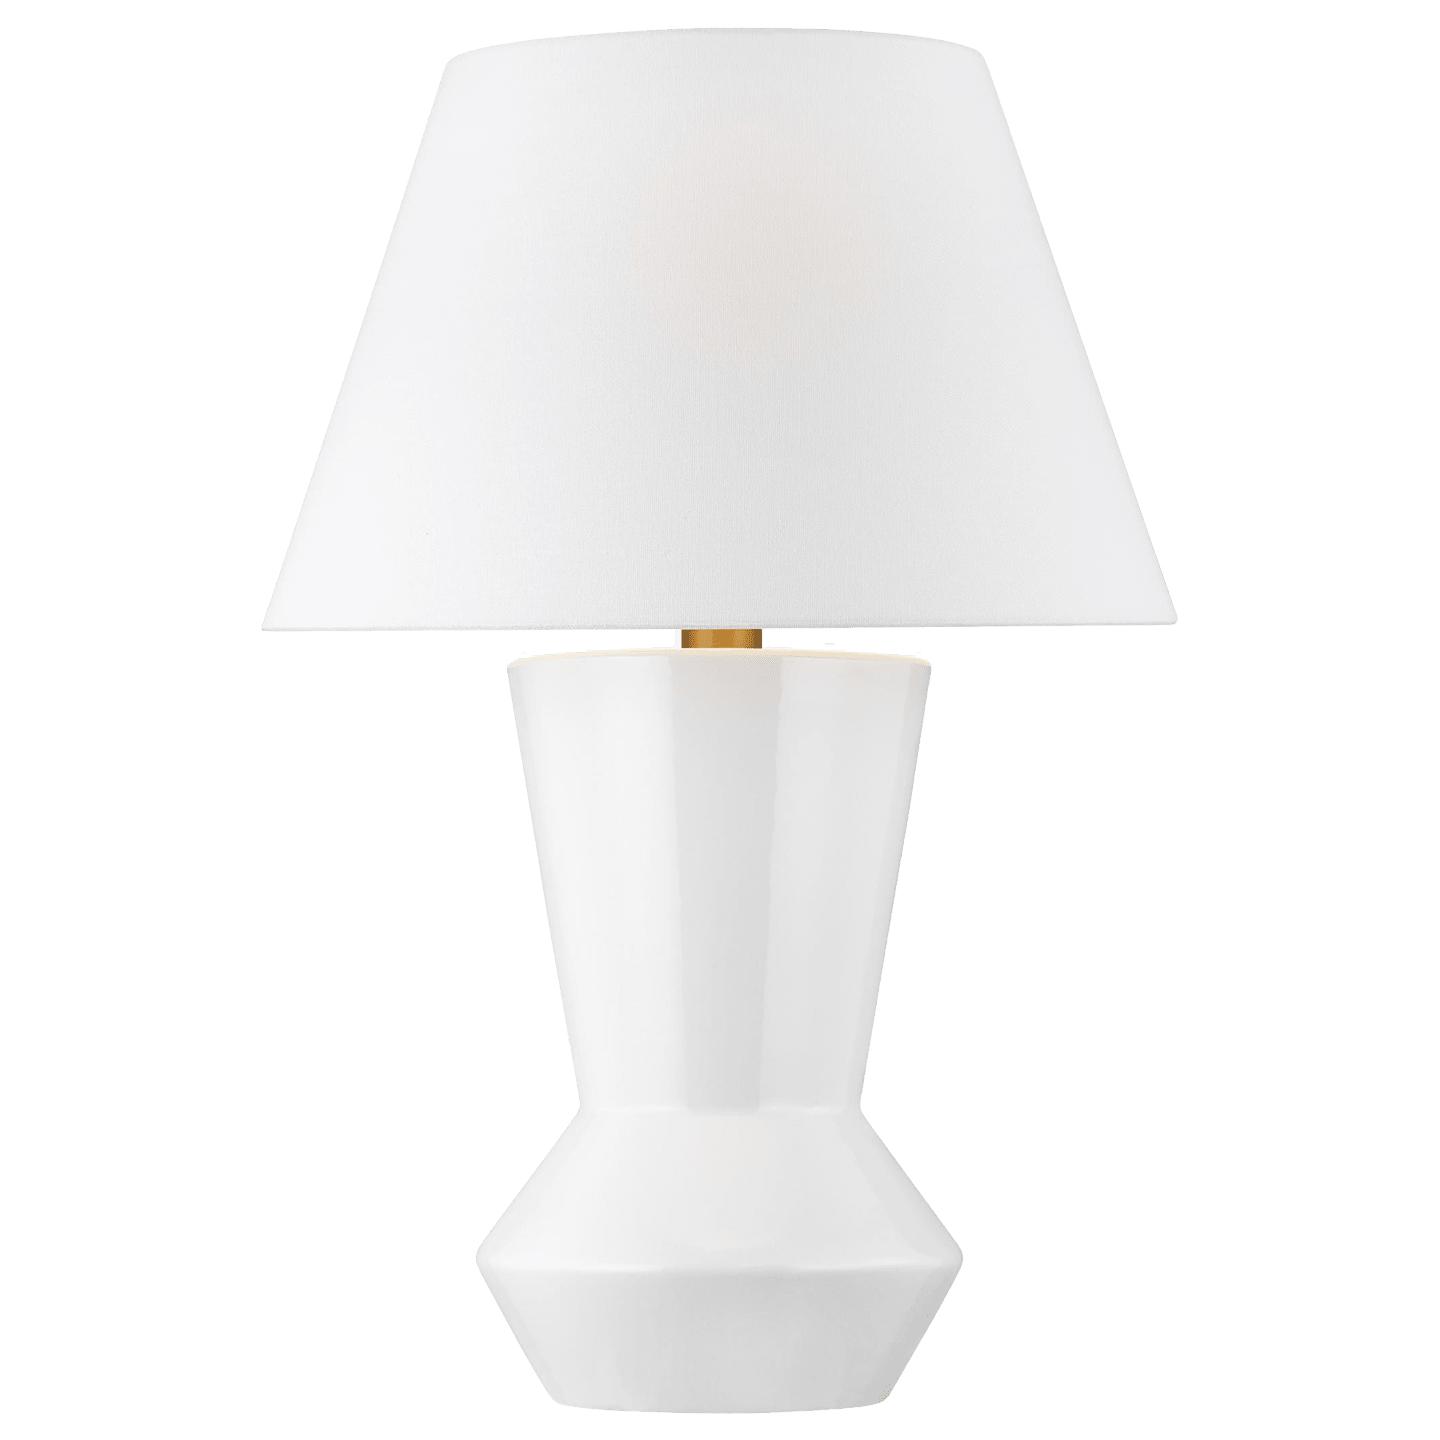 Купить Настольная лампа Abaco Table Lamp в интернет-магазине roooms.ru